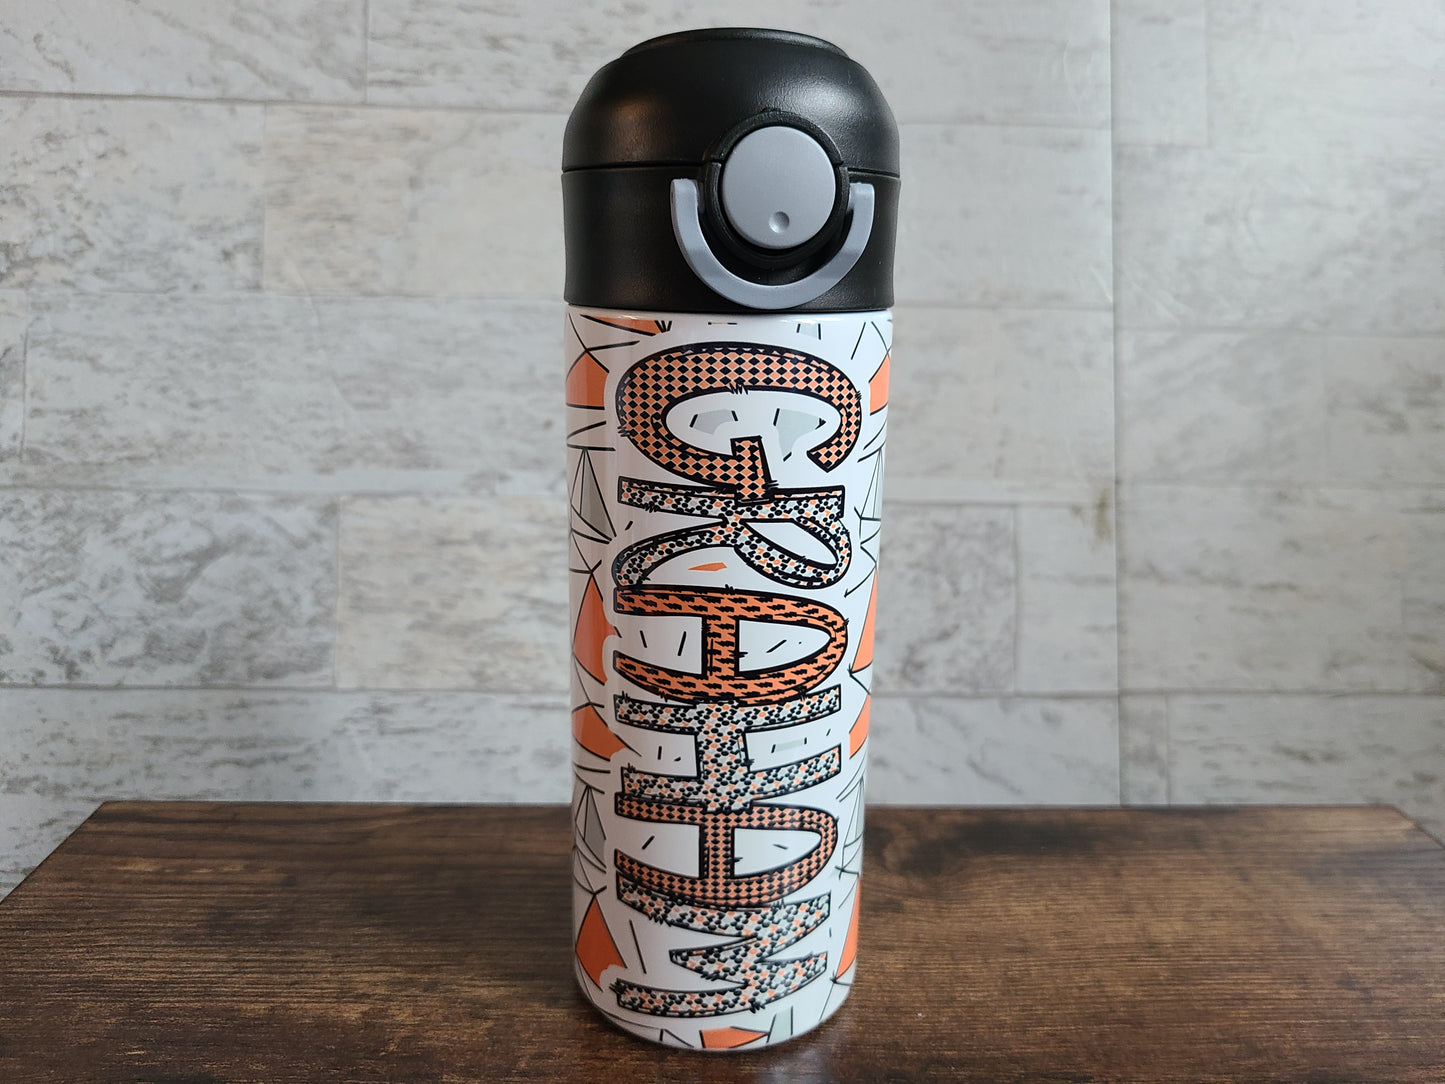 Personalized Orange & Black Water Bottle - 12 oz Flip Top Water Bottle with Straw